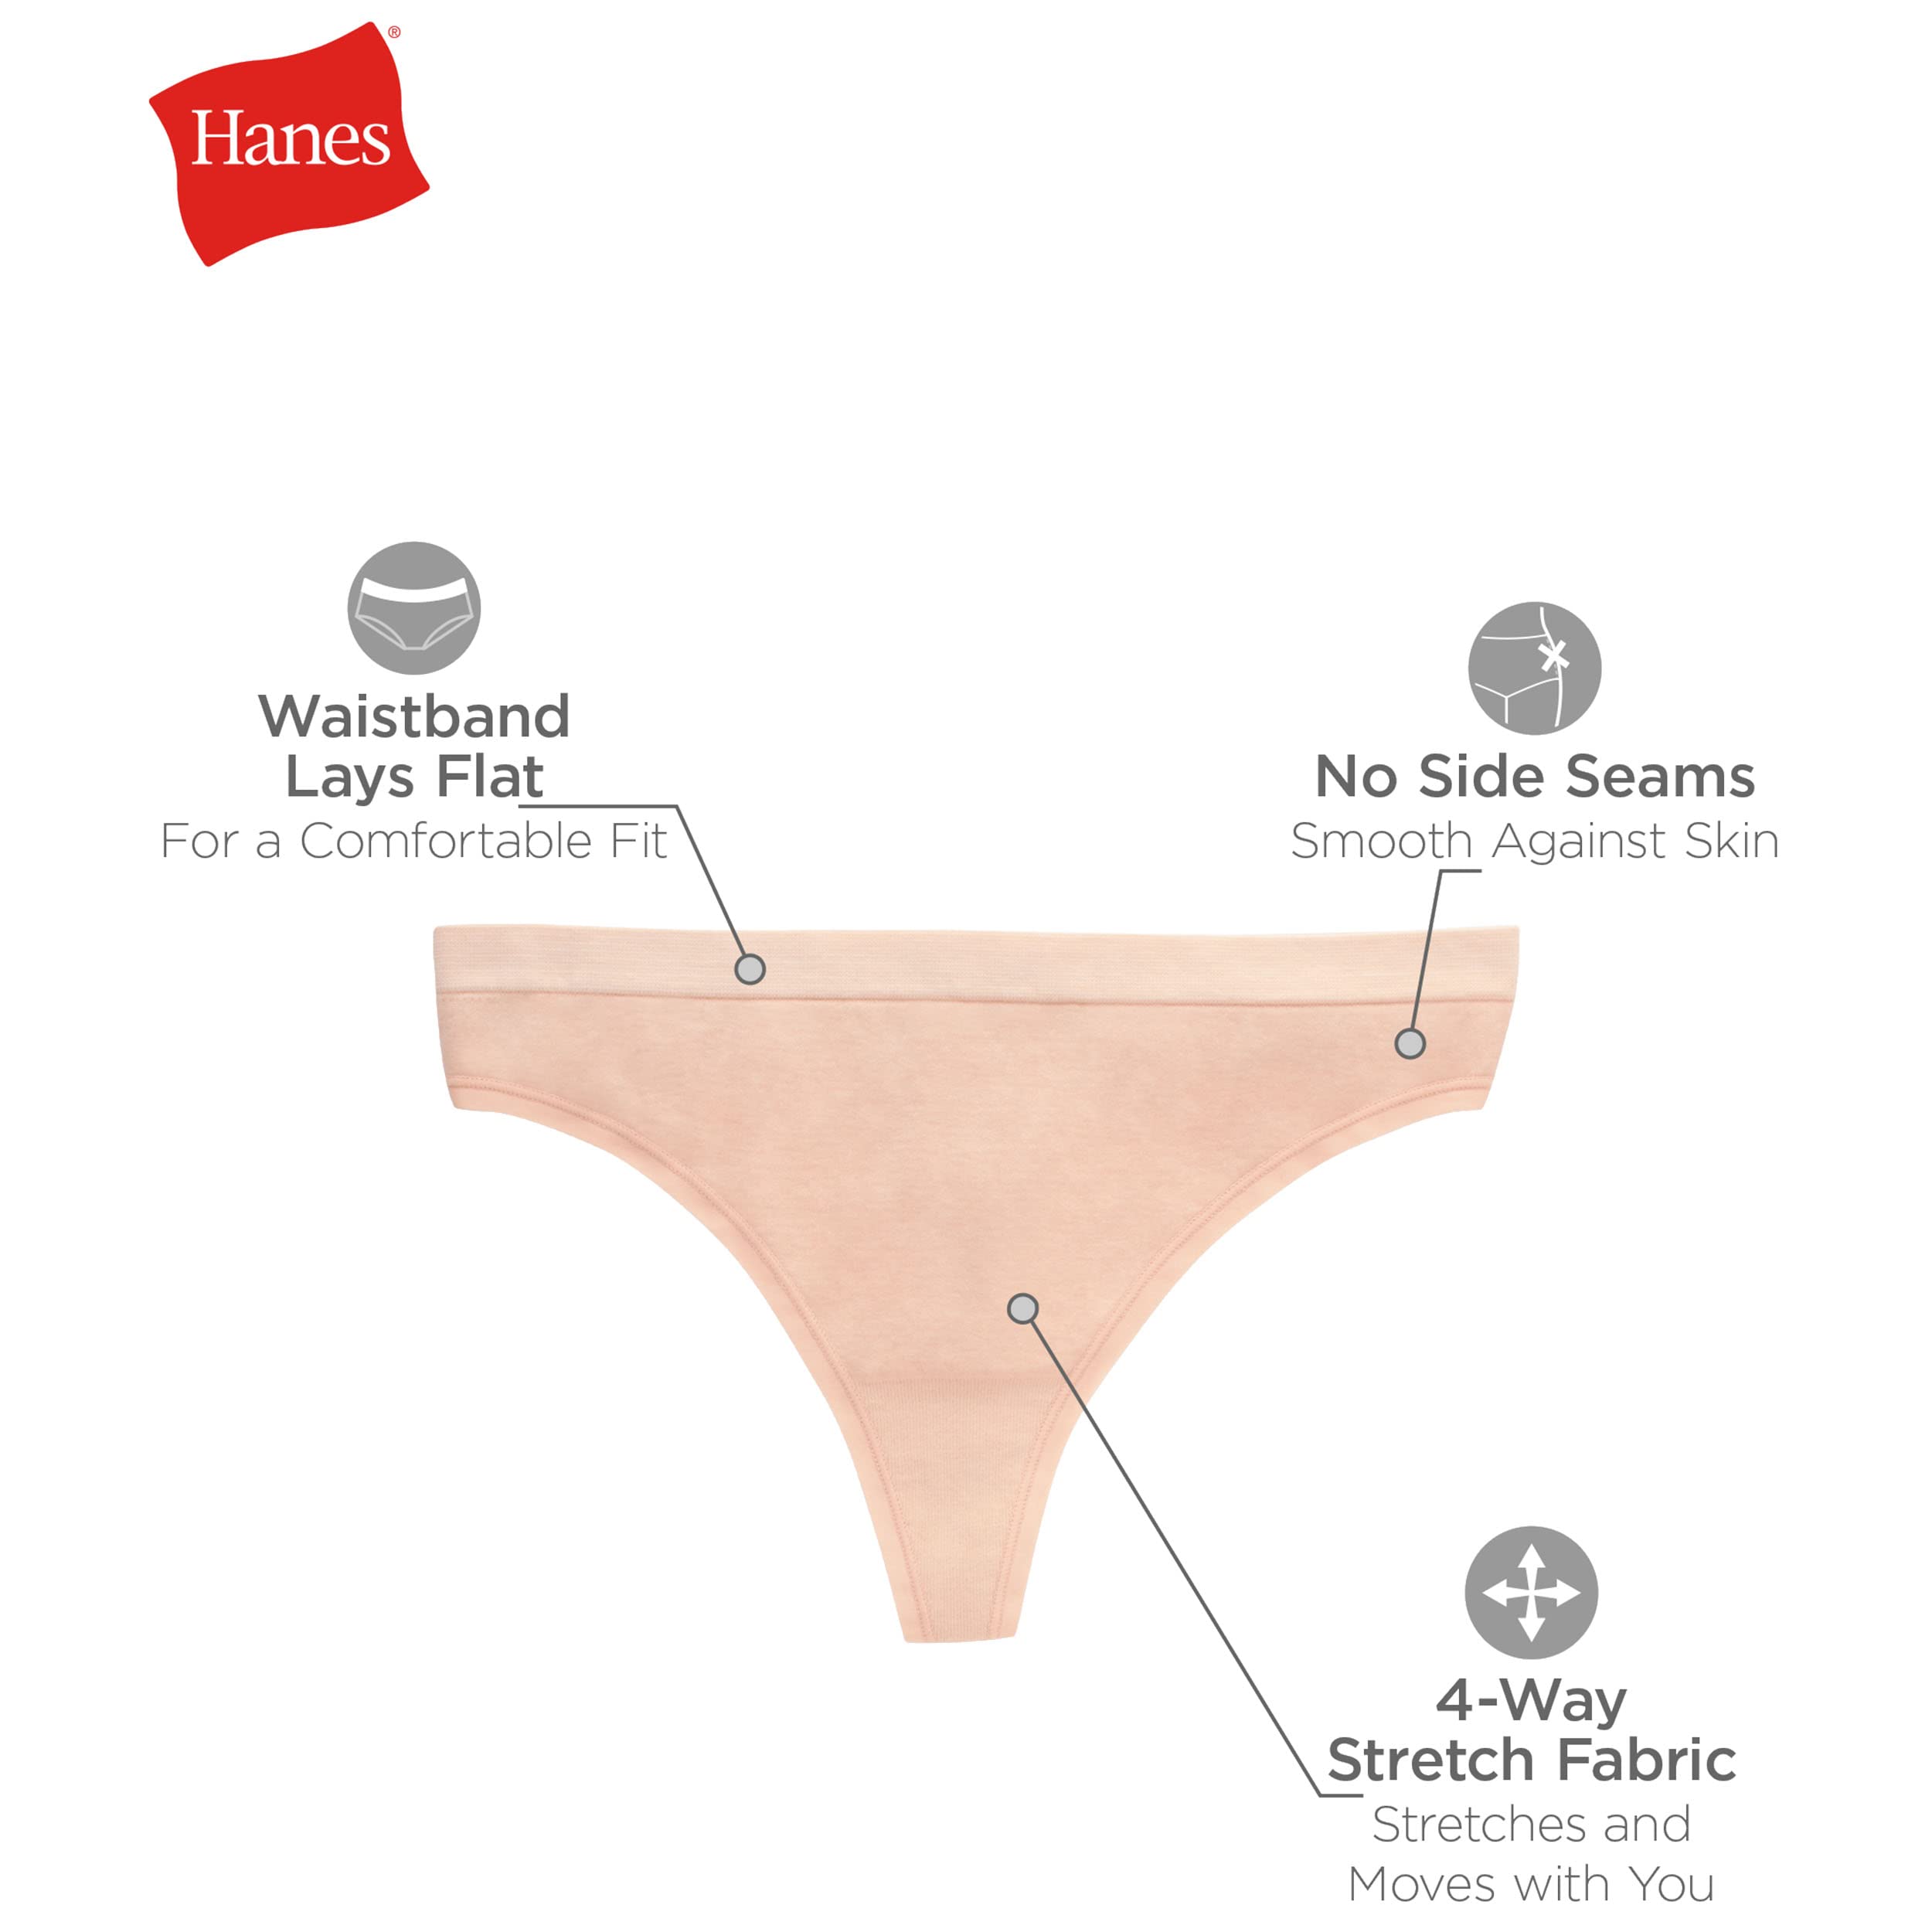 Hanes Women's Underwear Pack, ComfortFlex Fit Panties, Seamless Underwear, 6-Pack (Colors May Vary)